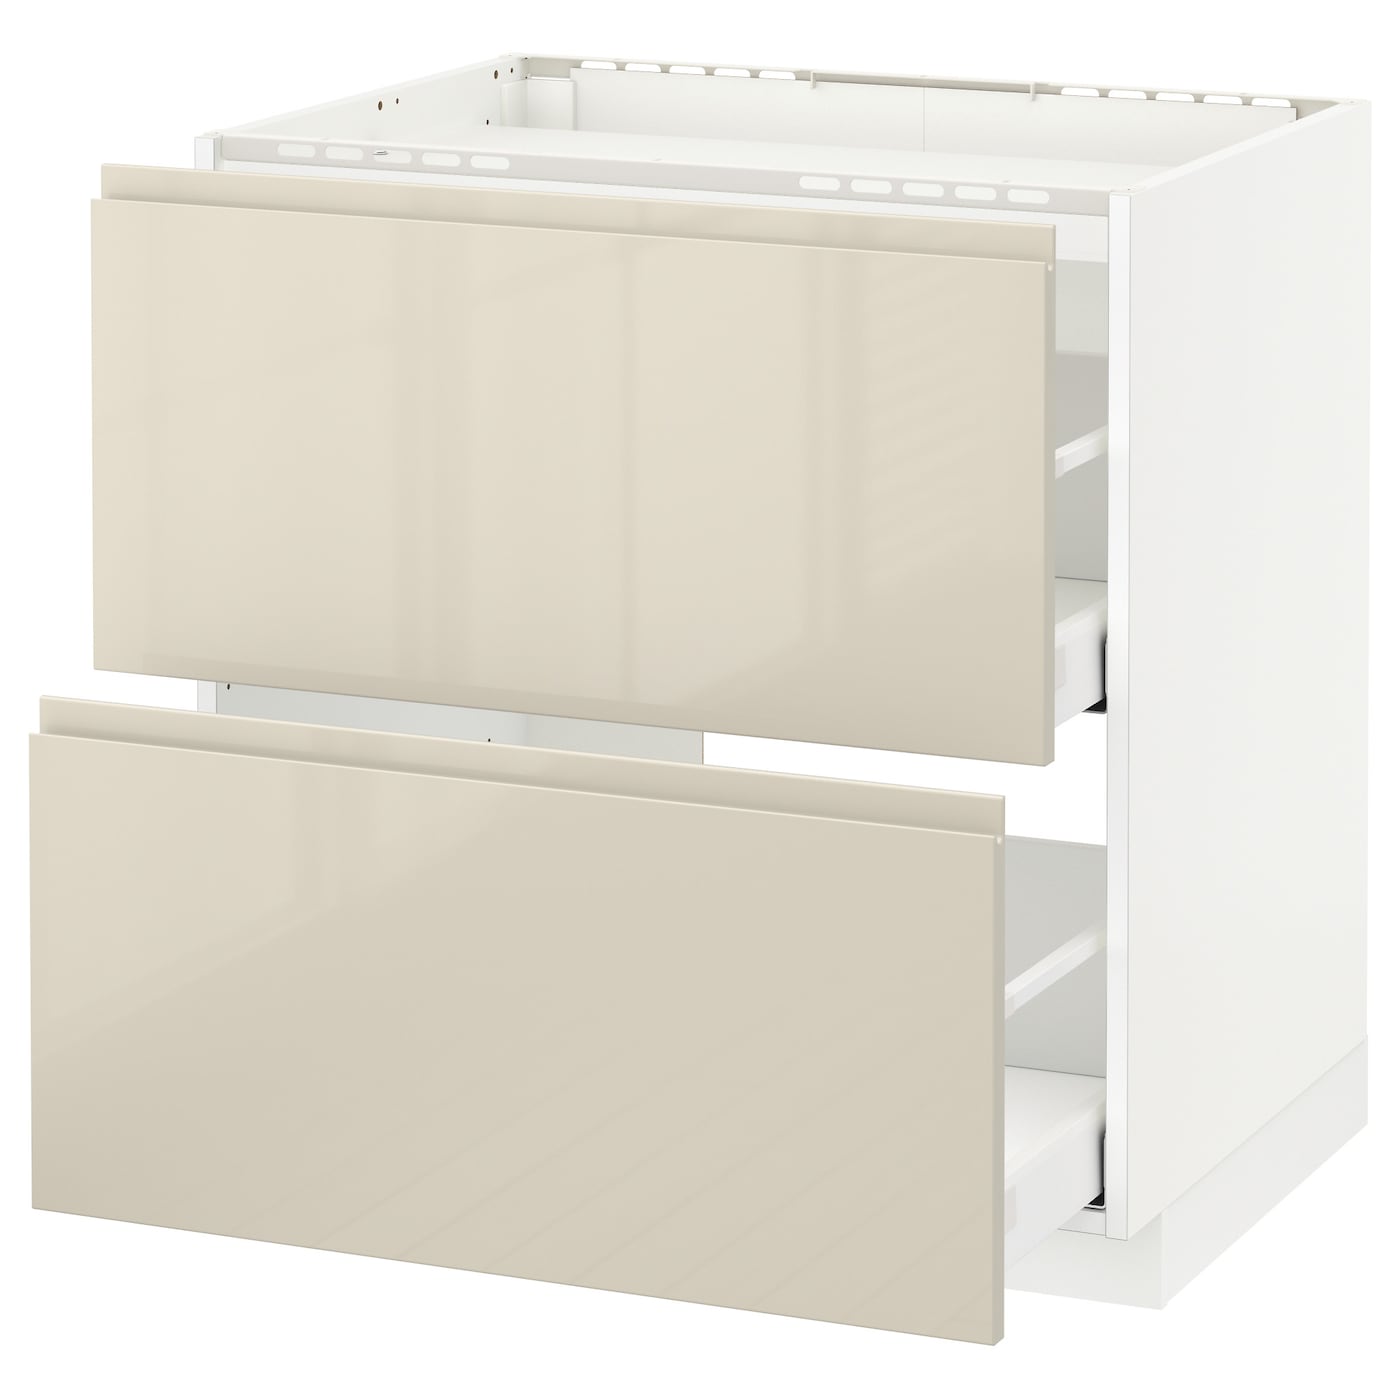 Напольный шкаф  - IKEA METOD MAXIMERA, 88x62,1x80см, белый/бежевый, МЕТОД МАКСИМЕРА ИКЕА